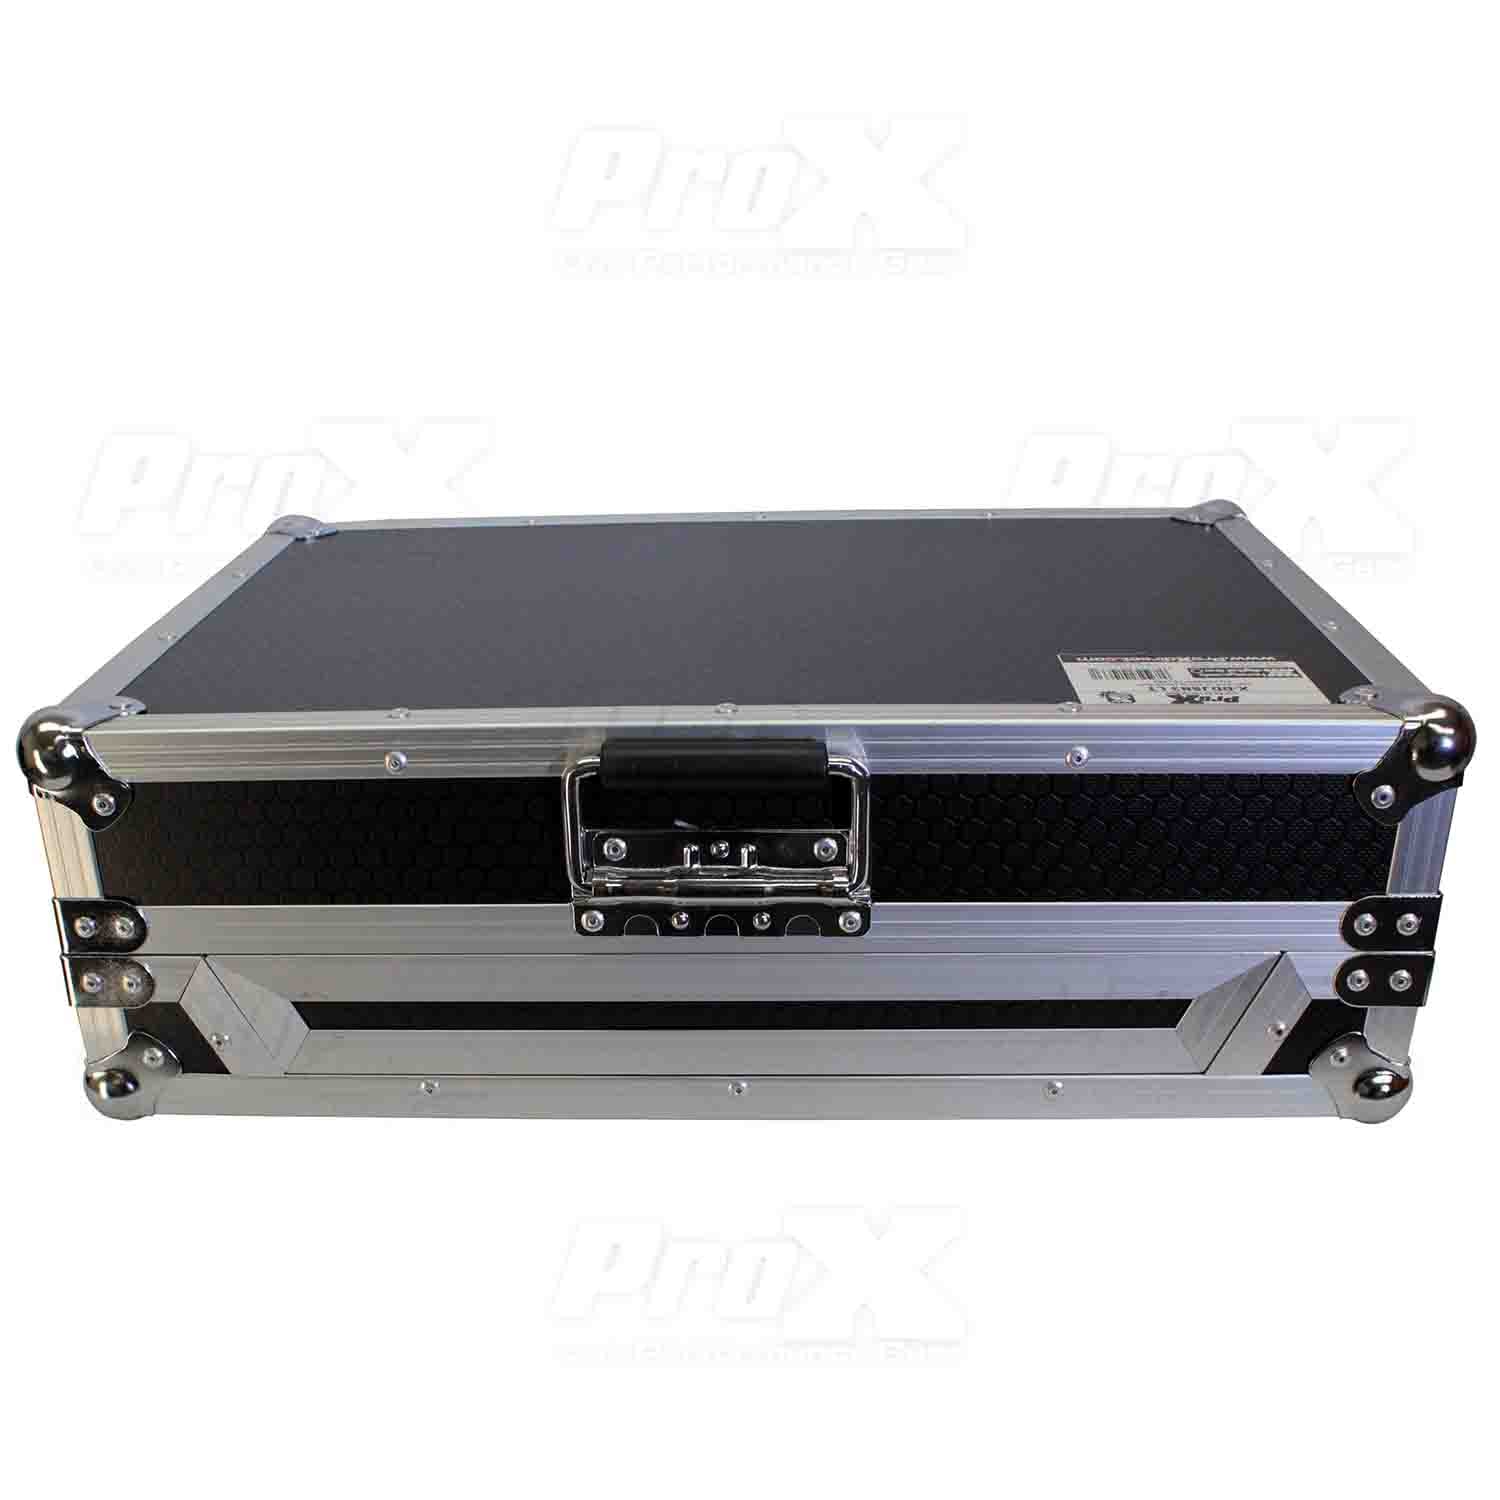 ProX X-DDJSB3 LT Flight Case for Pioneer DDJ-SB3 and DDJ-400 Digital Controller W-Sliding Laptop Shelf - Hollywood DJ